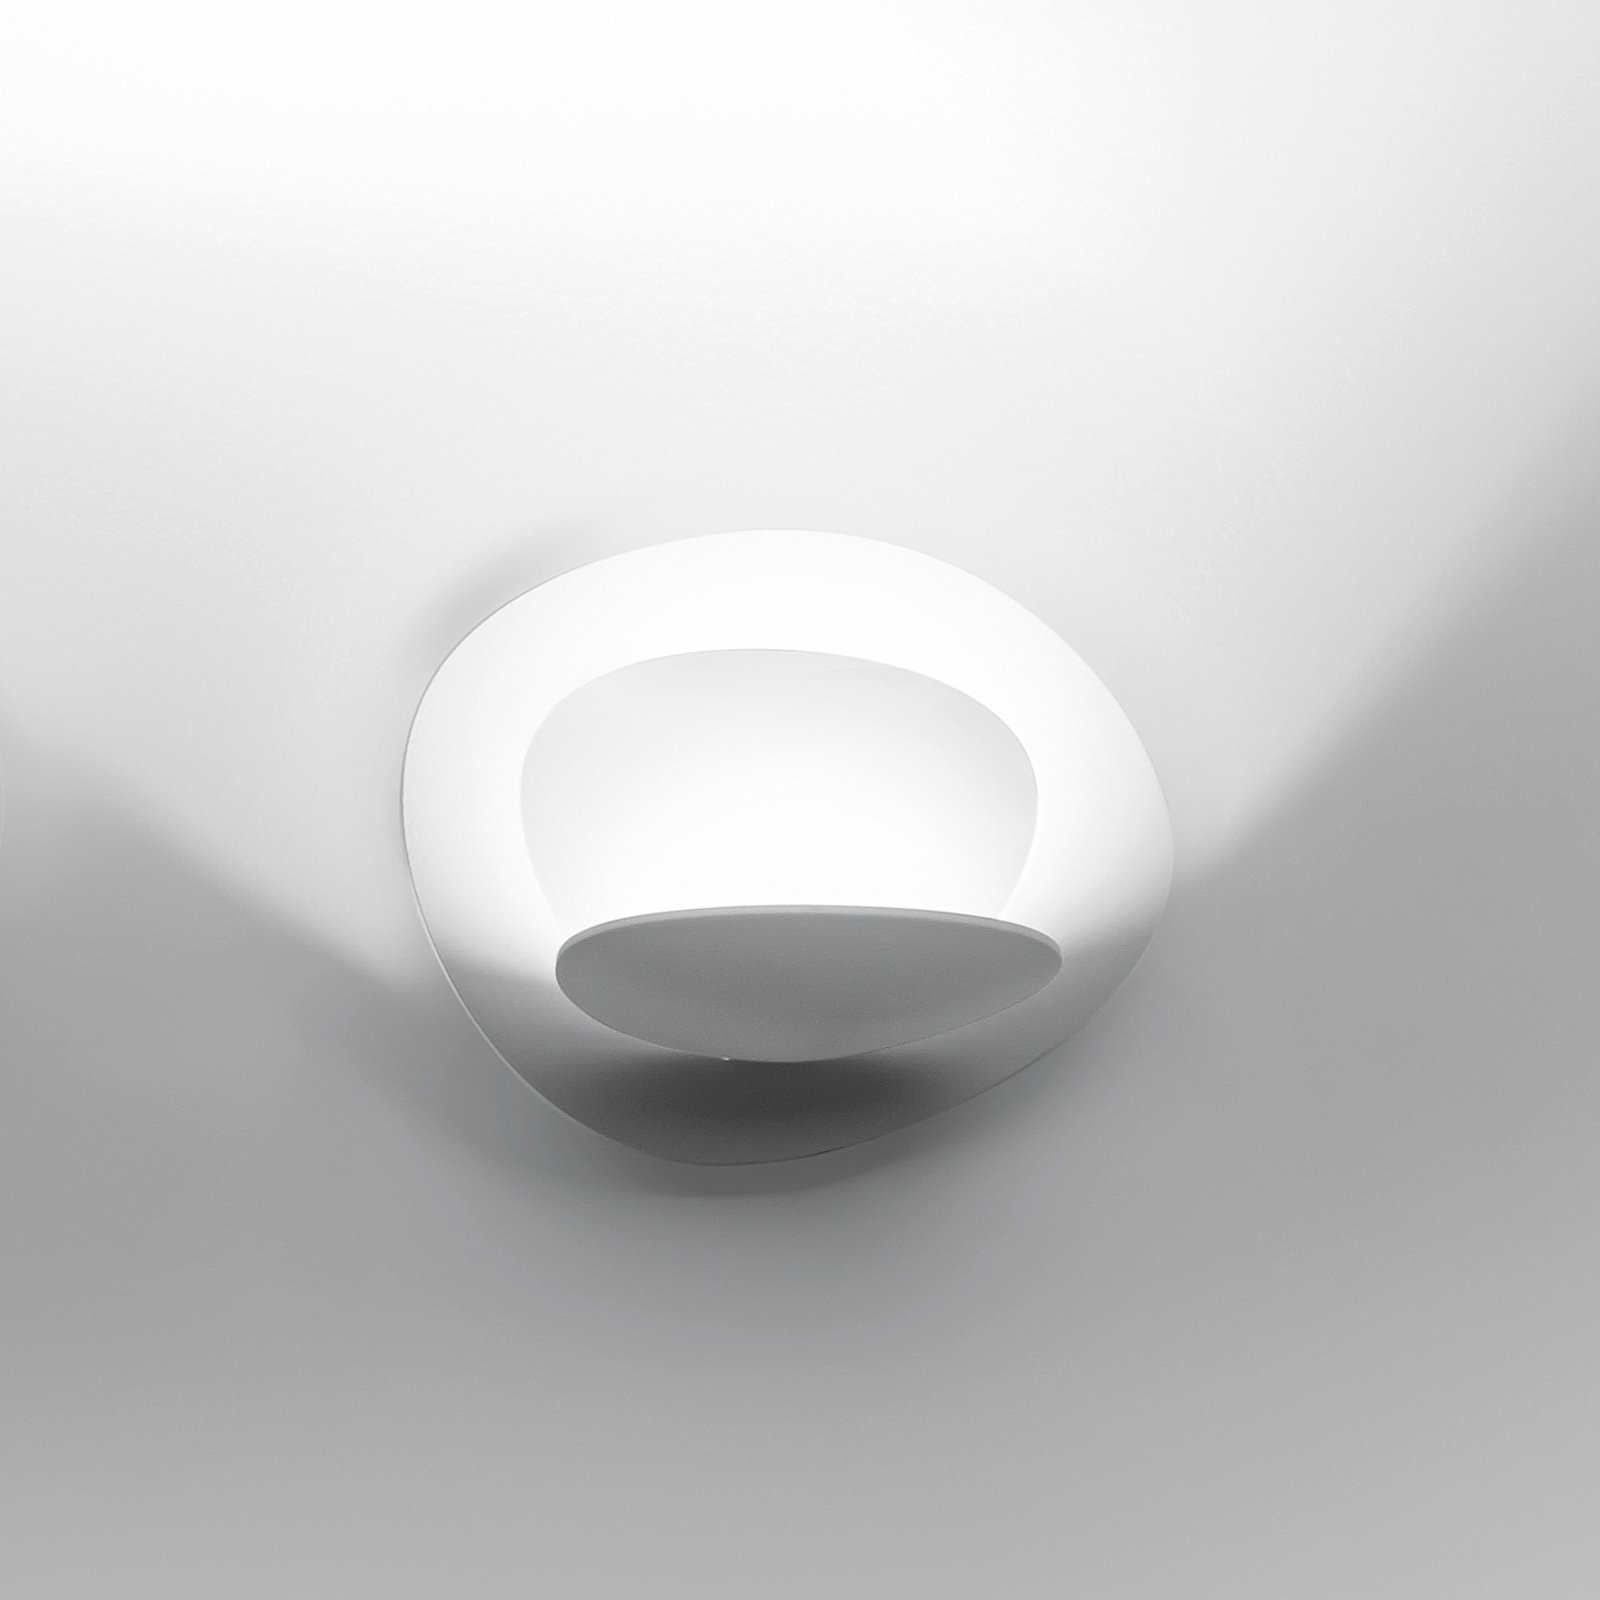 Artemide Pirce Micro LED wall light white 2,700 K